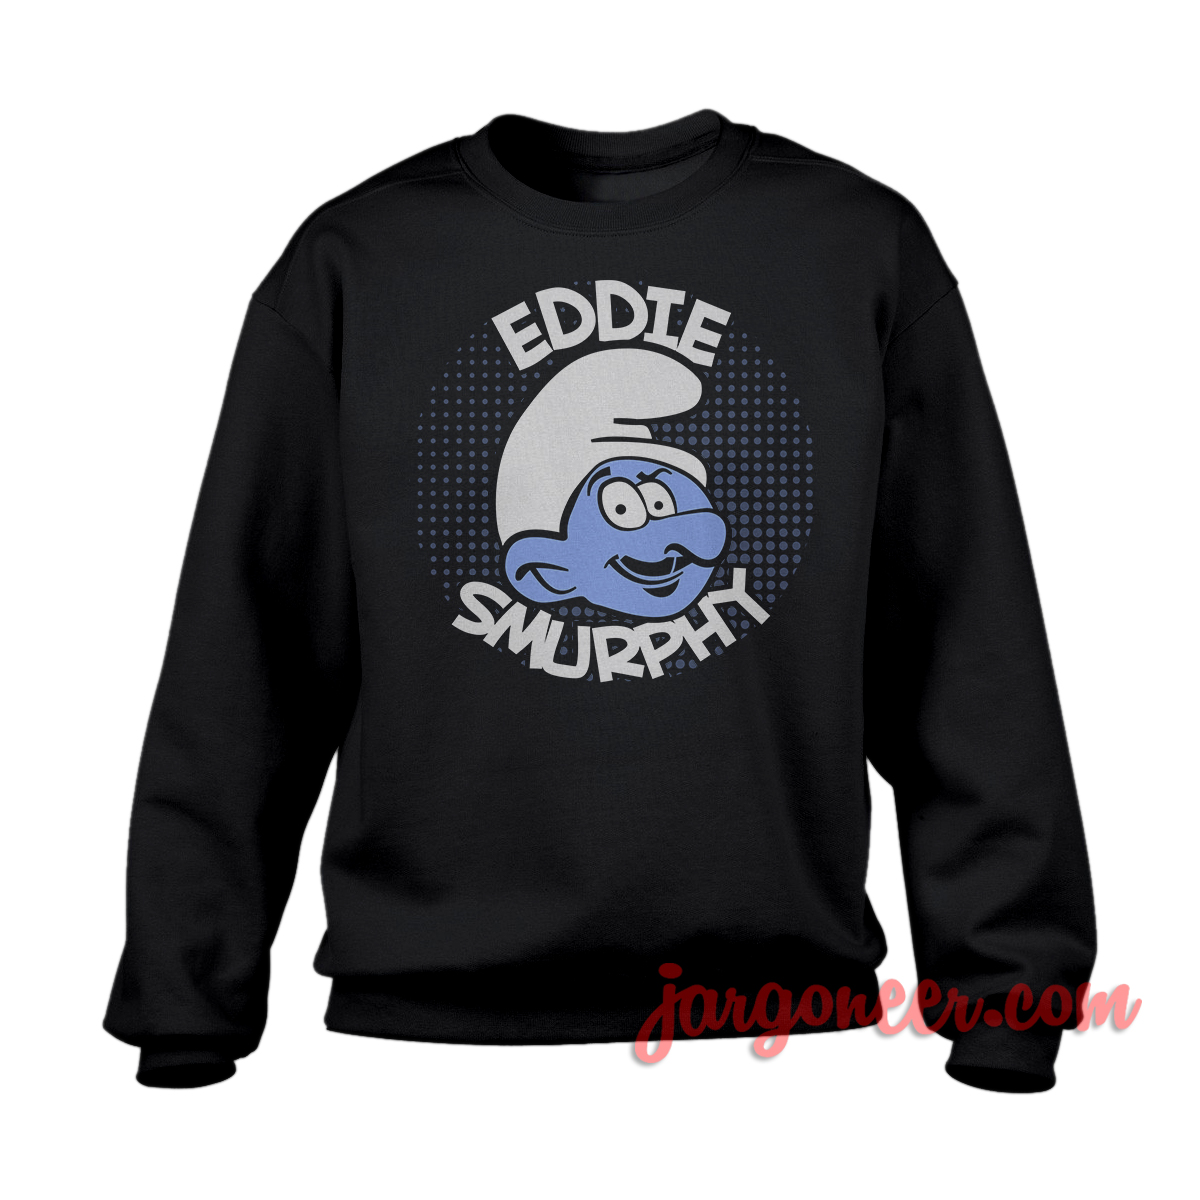 Eddie Smurphy Black SS - Shop Unique Graphic Cool Shirt Designs